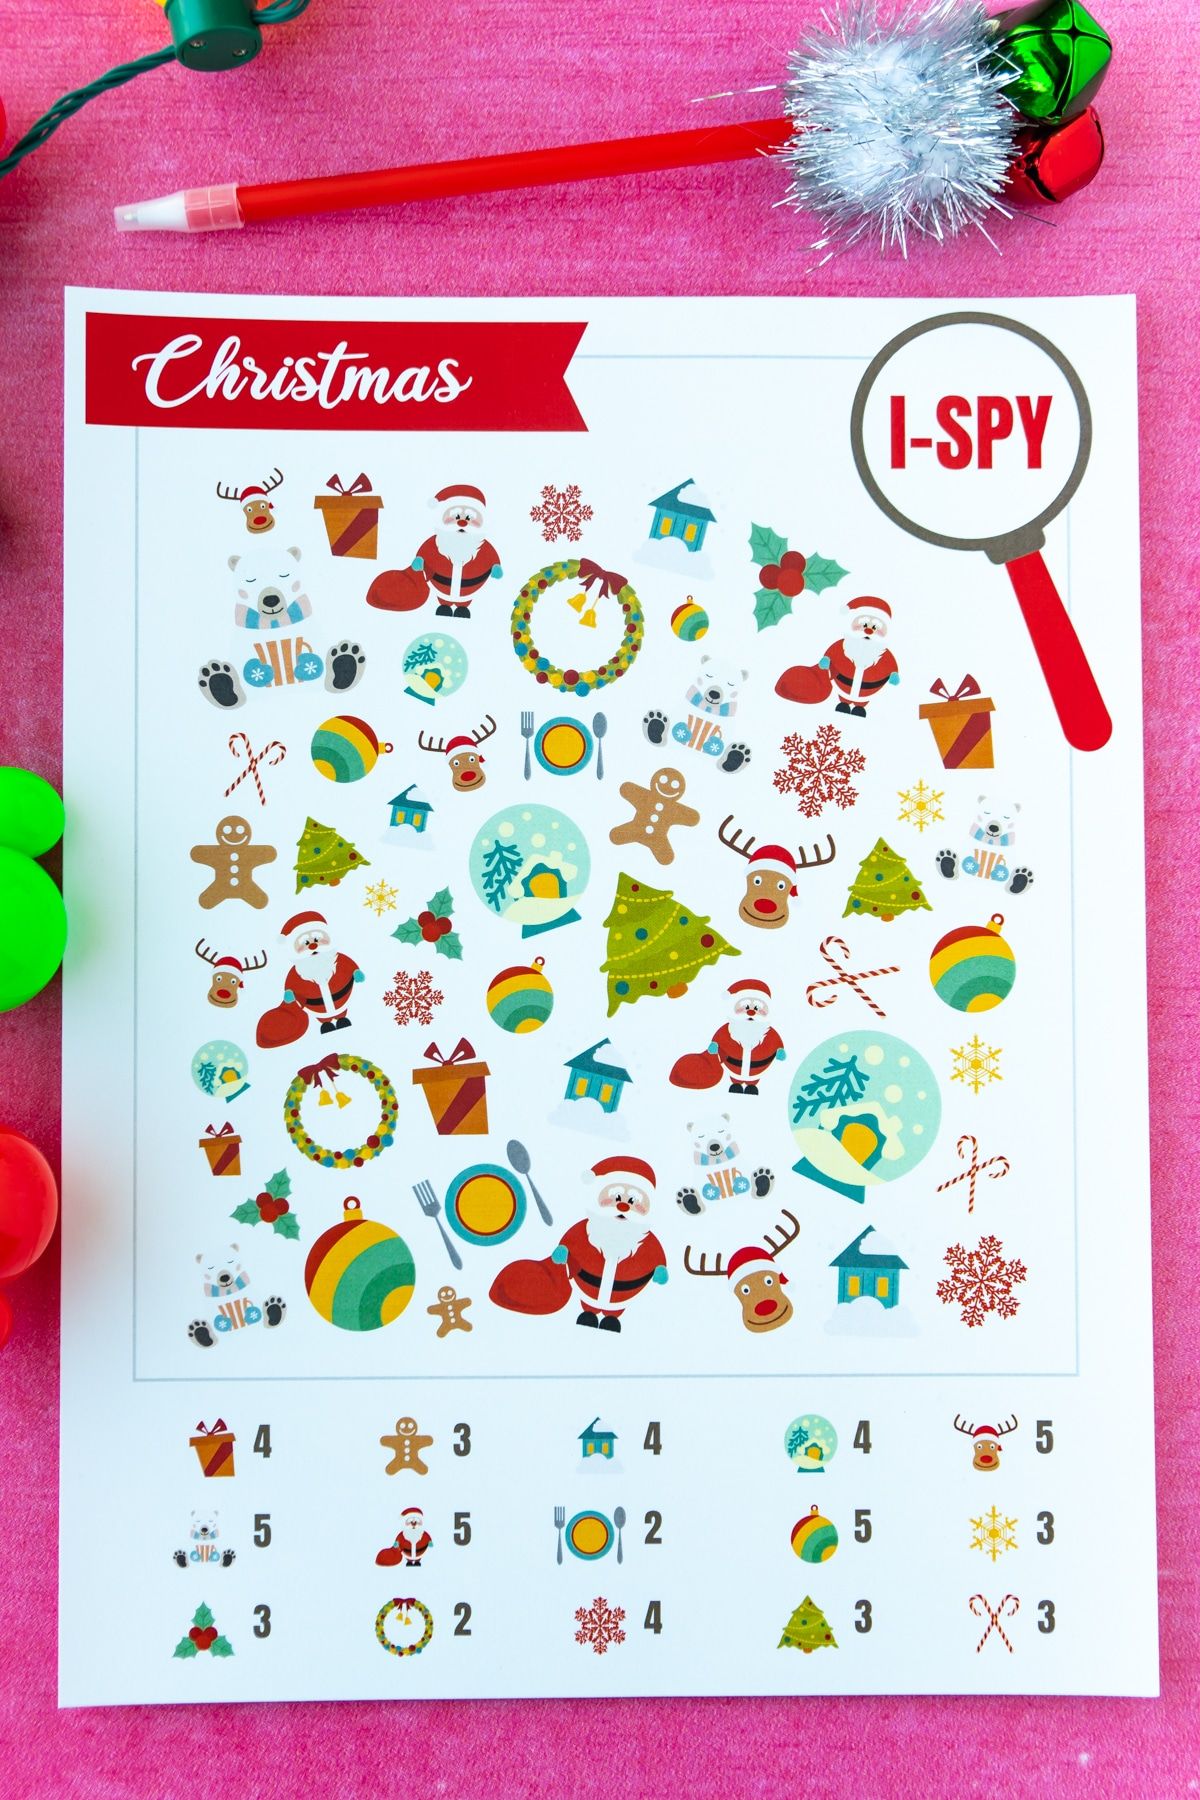 Afgedrukt kerst-i-spy-spel op een roze achtergrond